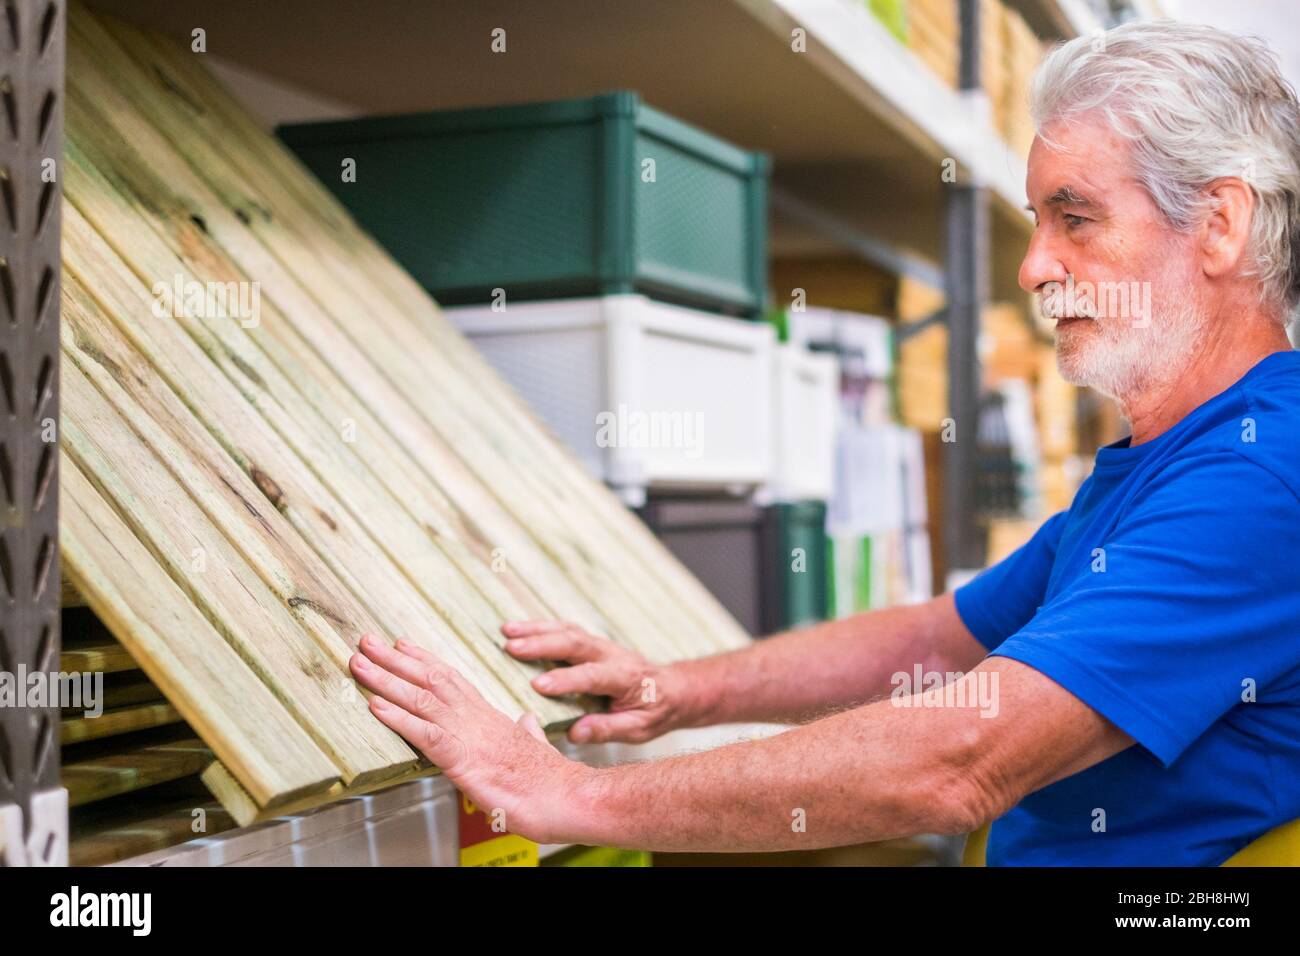 Kaukasischen Mann wählen Artikel in Baumarkt - Holzboden wie Paletten Möbel oder Boden zu Hause bauen - Geschäftskonzept für Rentner wie Aktivitäten zu tun Stockfoto